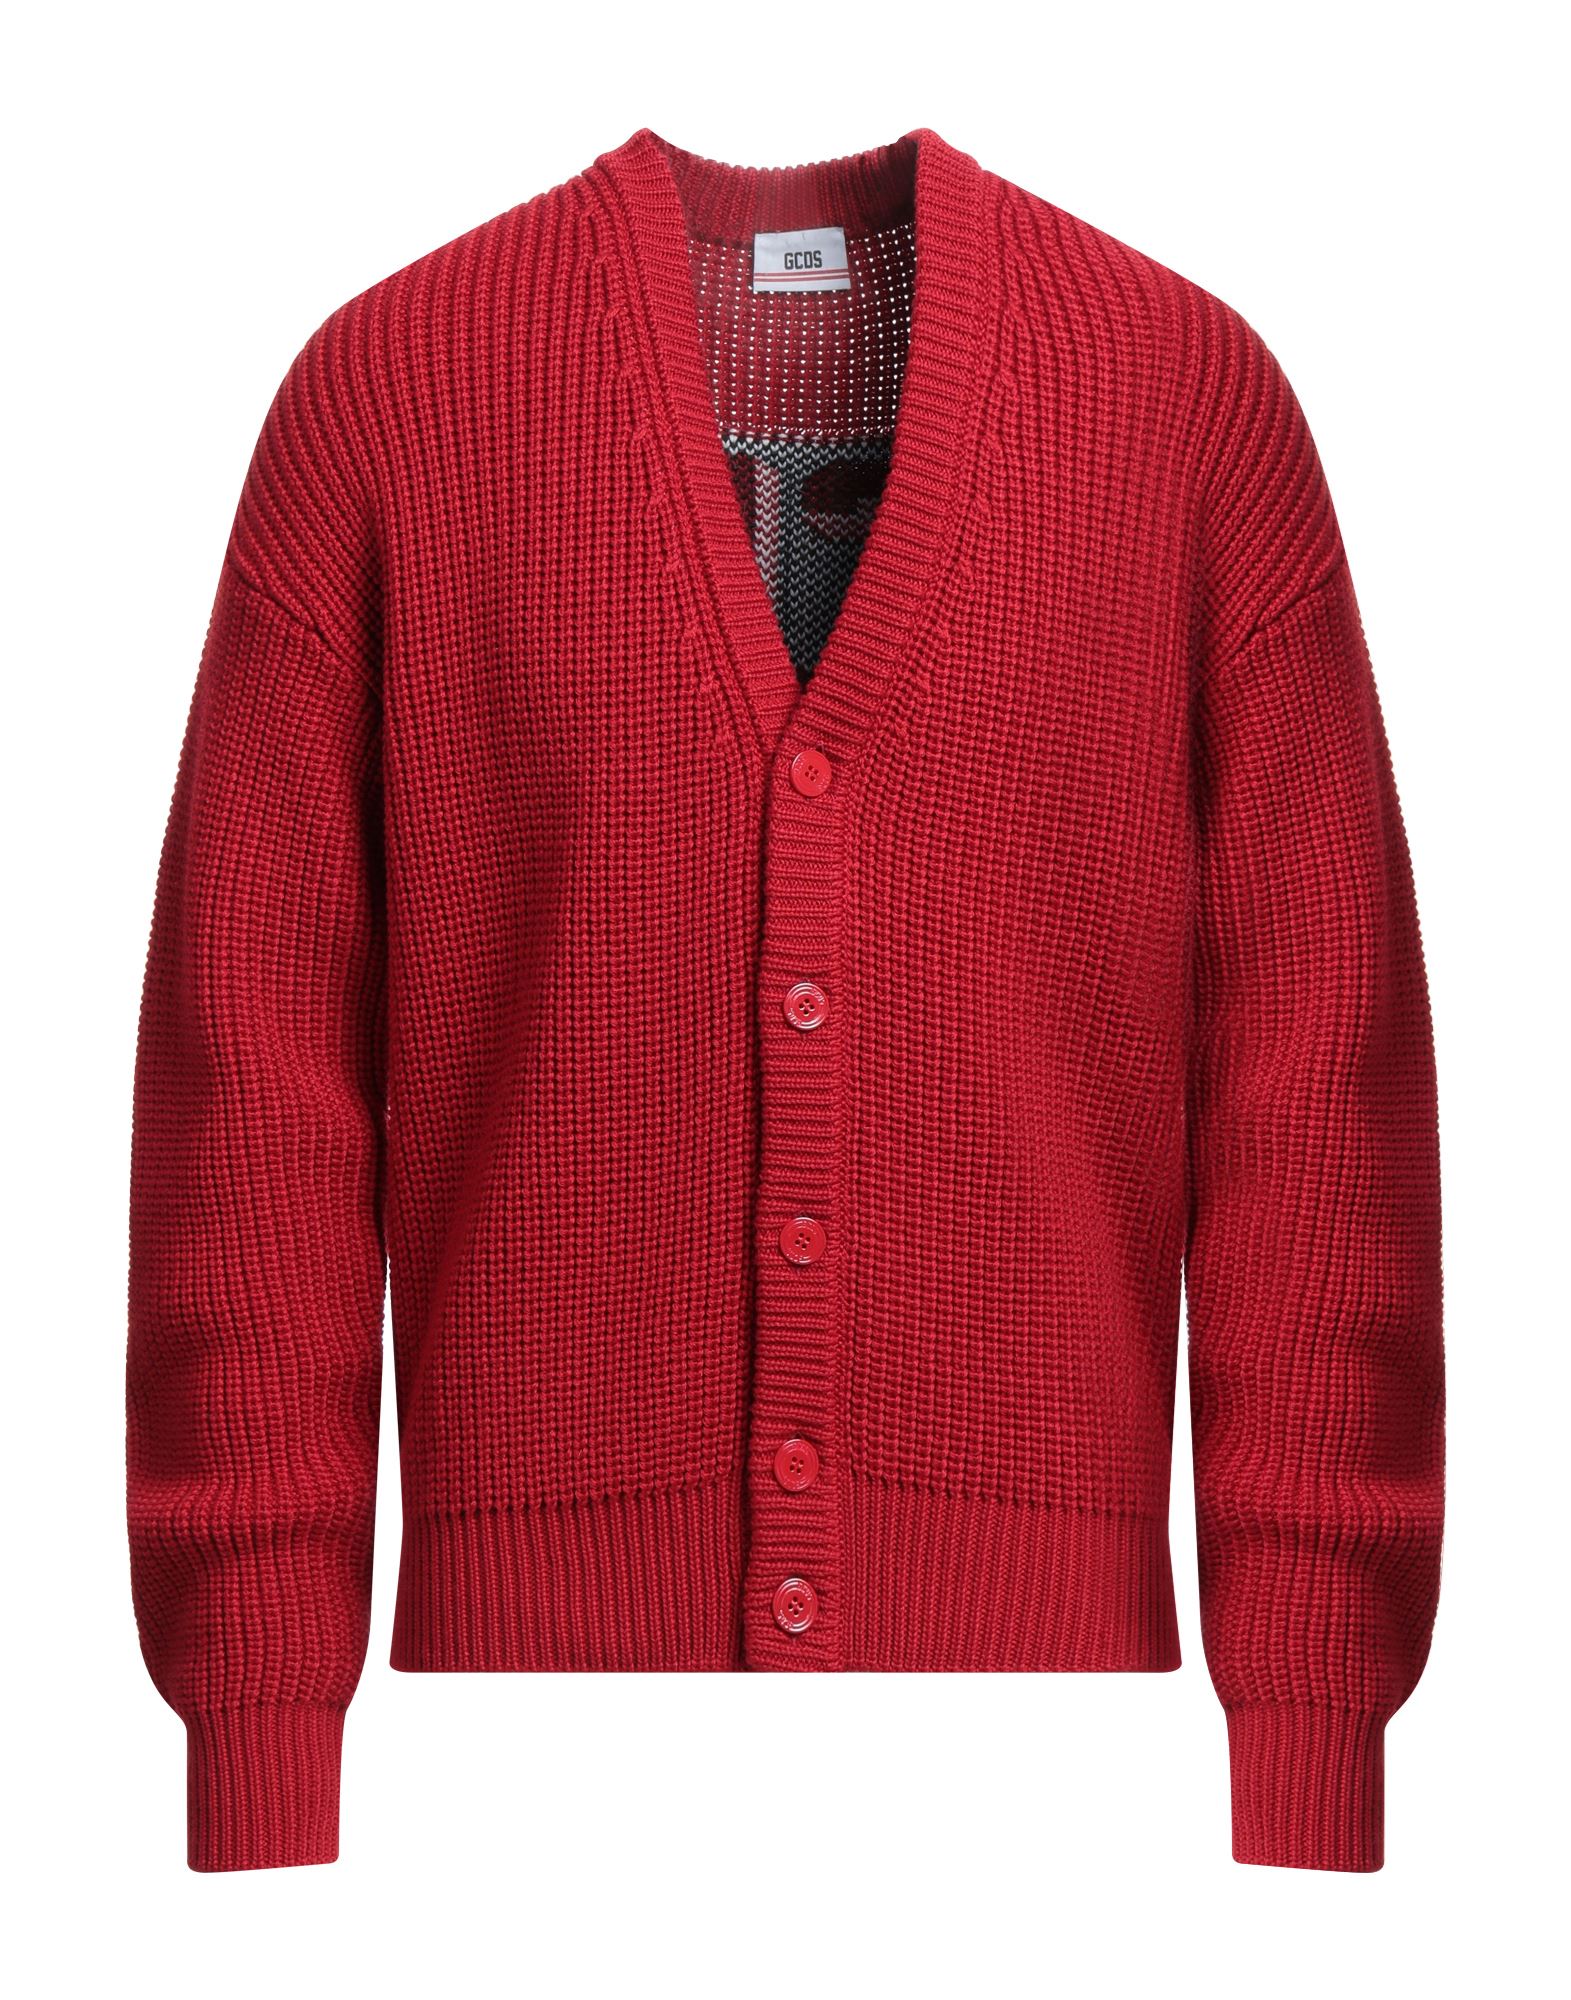 Shop Gcds Man Cardigan Red Size L Wool, Acrylic